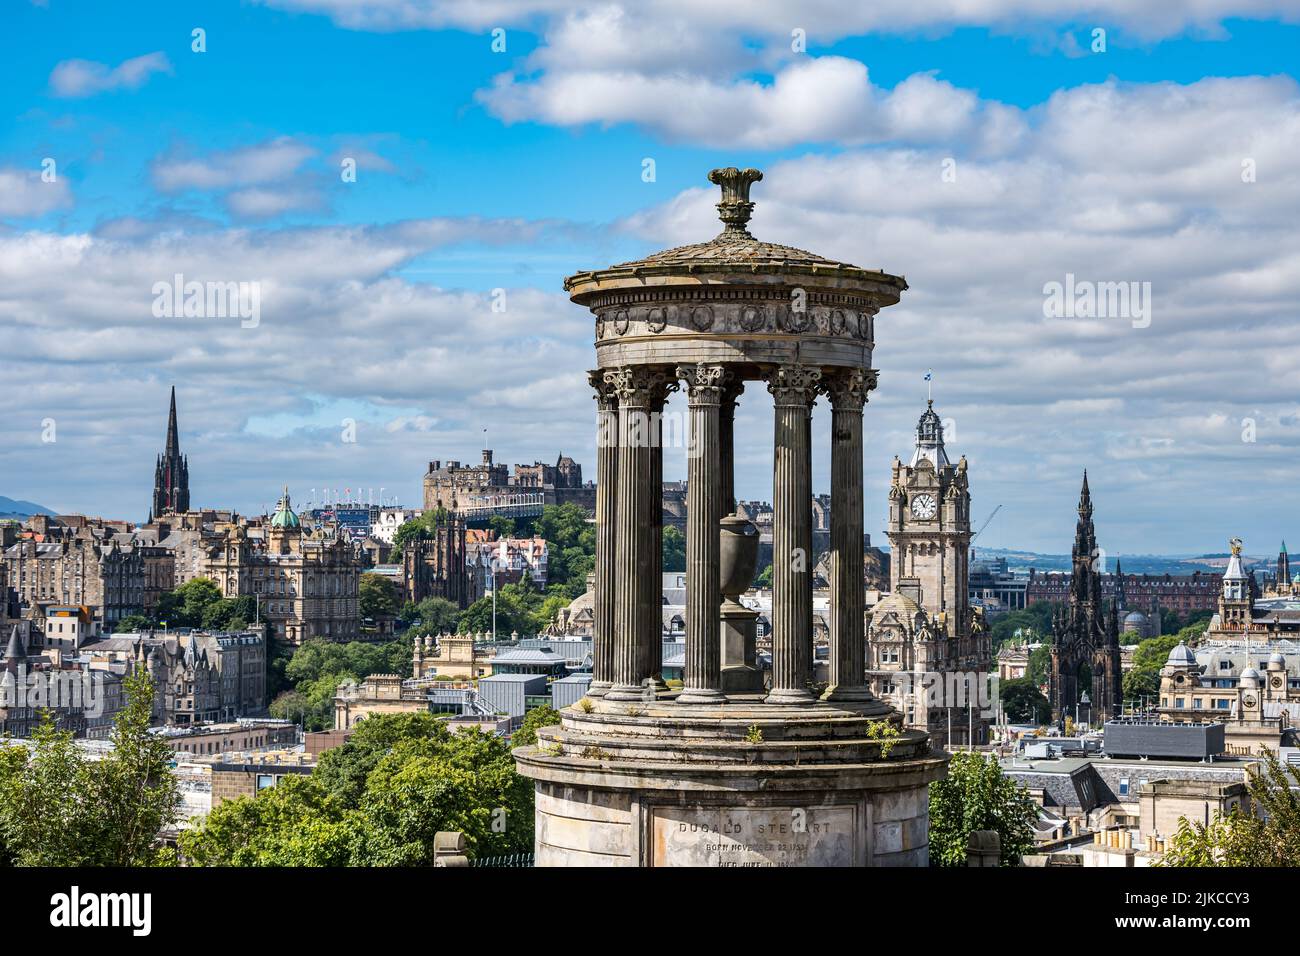 Vista icónica del Monumento Dugald Stewart sobre el horizonte de la ciudad con el castillo de Edimburgo y la torre del reloj del hotel Balmoral, Edimburgo, Escocia, Reino Unido Foto de stock